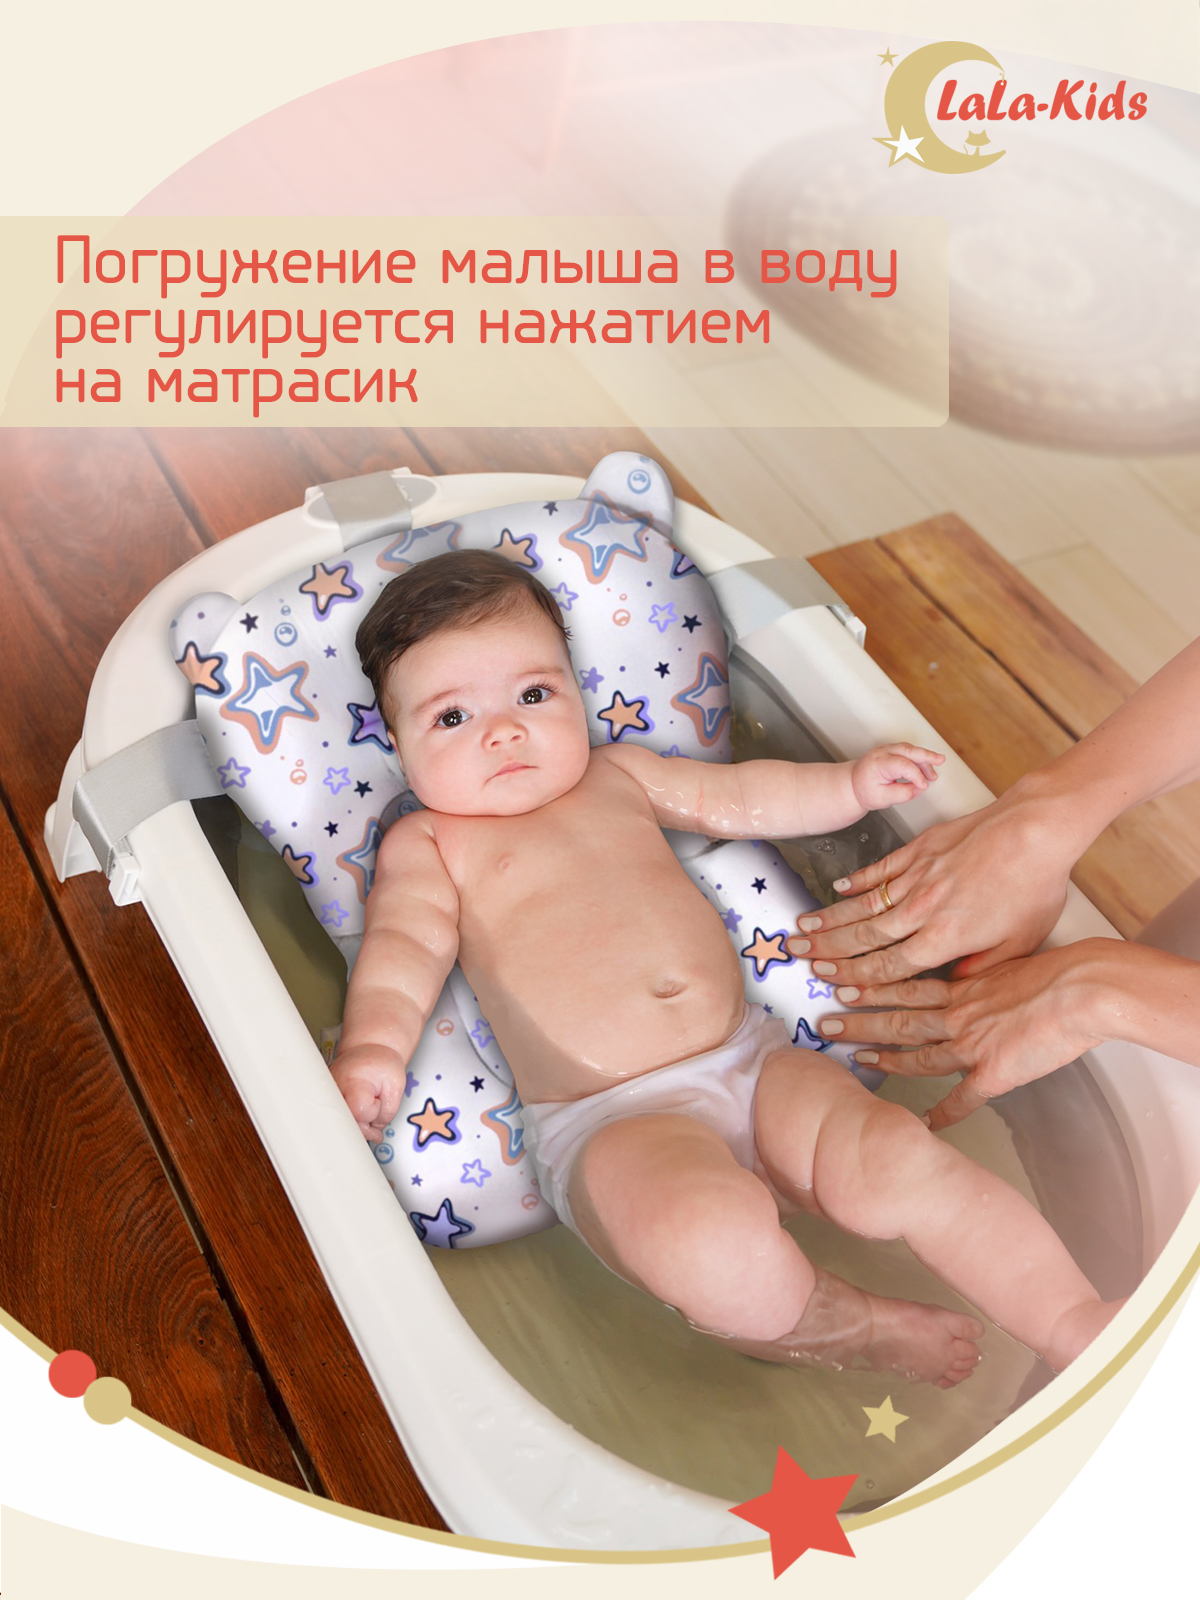 Детская ванночка с термометром LaLa-Kids складная с матрасиком фиолетовым в комплекте - фото 18